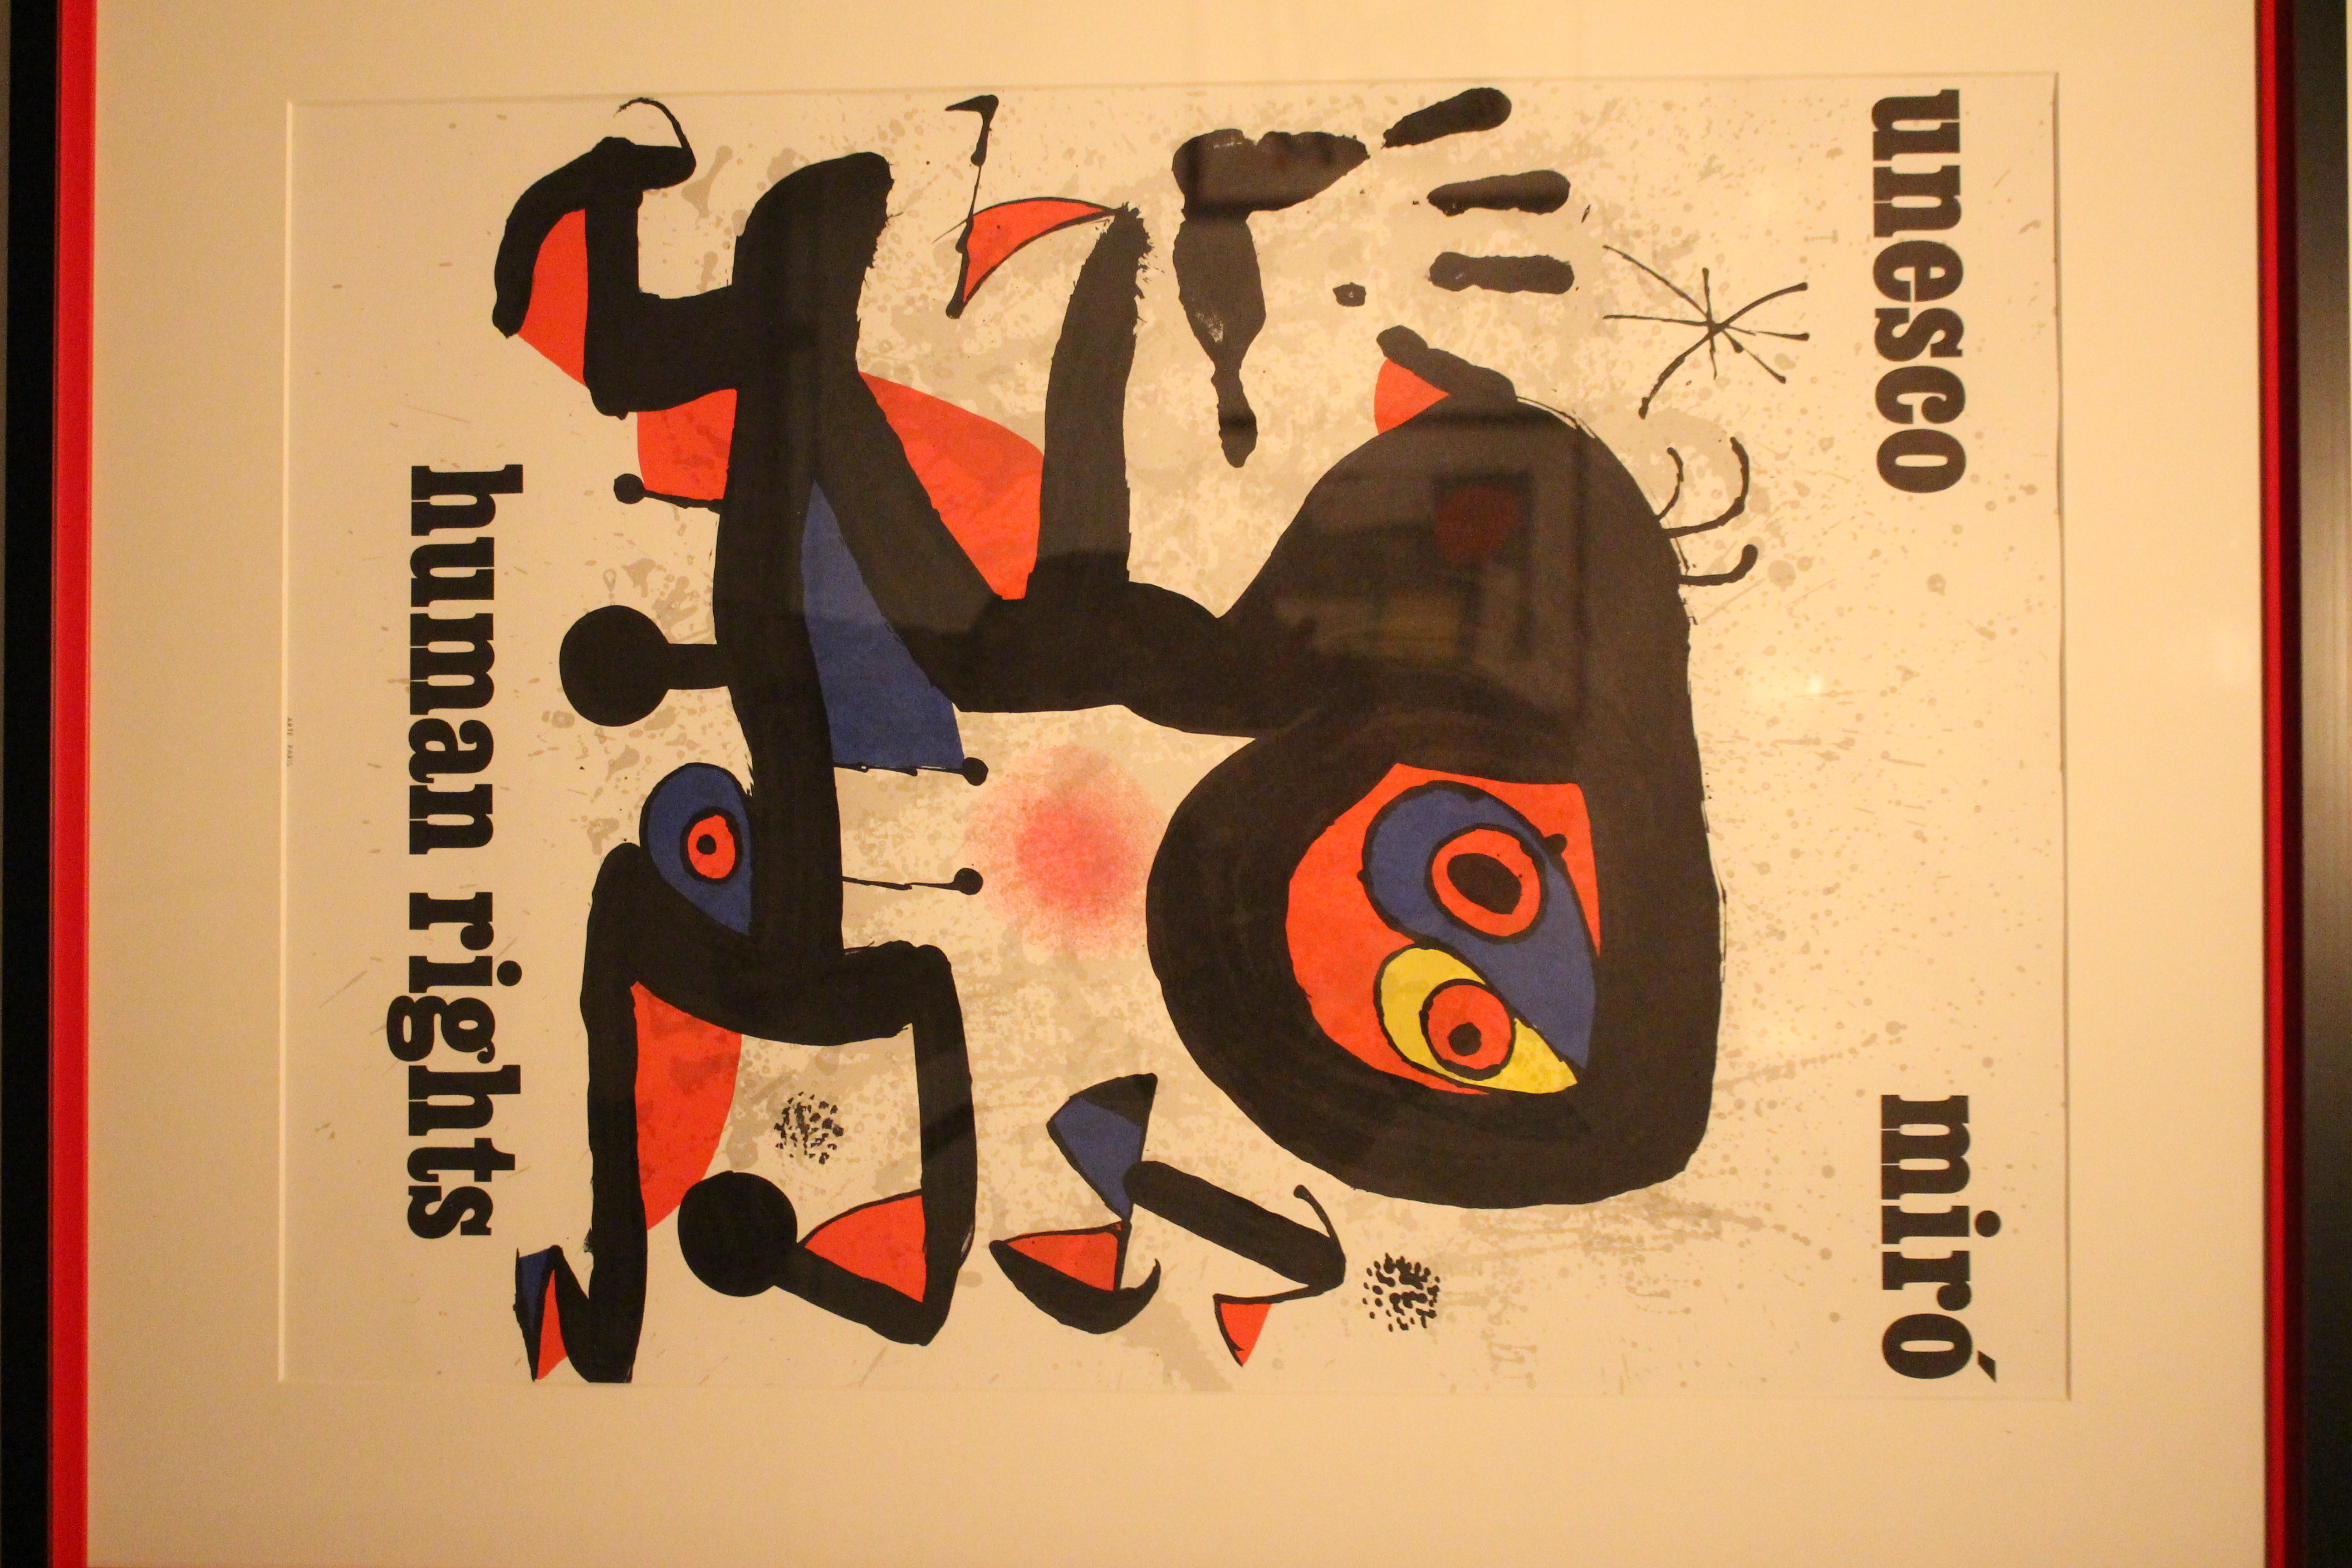 Fotografía de uno de los ejemplares de póster que Joan Miró realizó